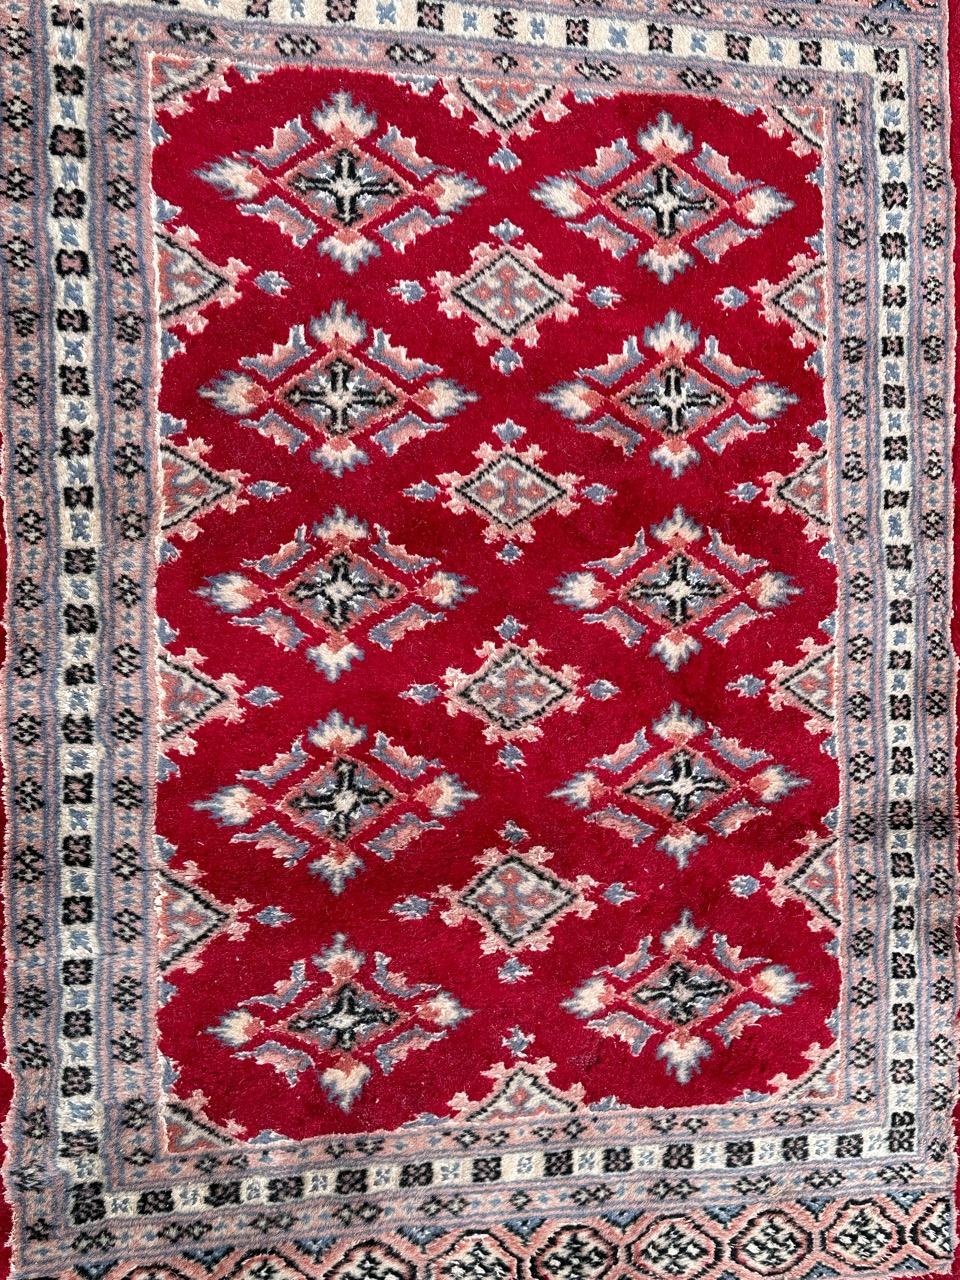 Hübscher kleiner pakistanischer Vintage-Teppich mit schönem geometrischem Muster im Stil turkmenischer Teppiche und schönen Farben mit rotem Feld, rosa, himmelblau, weiß und schwarz, vollständig und fein handgeknüpft mit Wolle auf